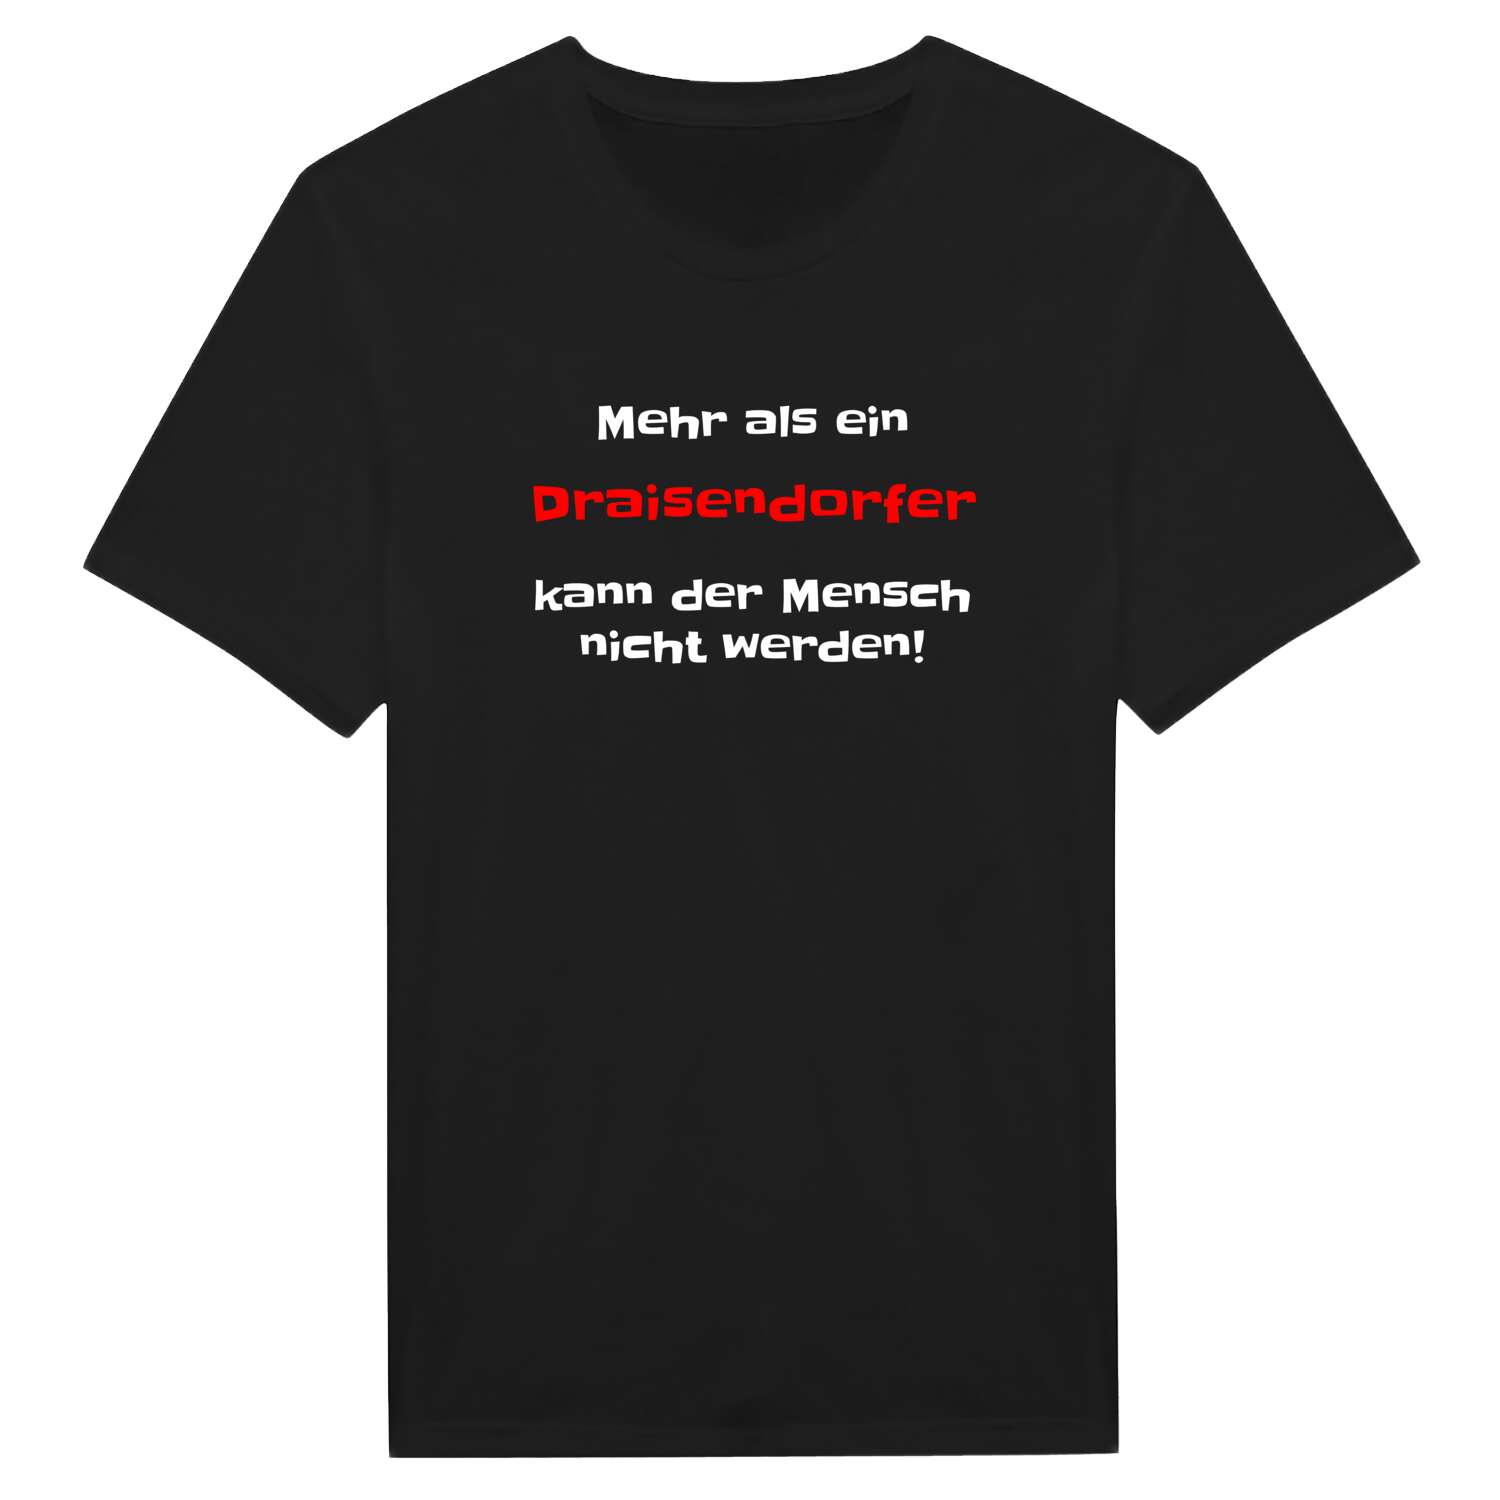 Draisendorf T-Shirt »Mehr als ein«